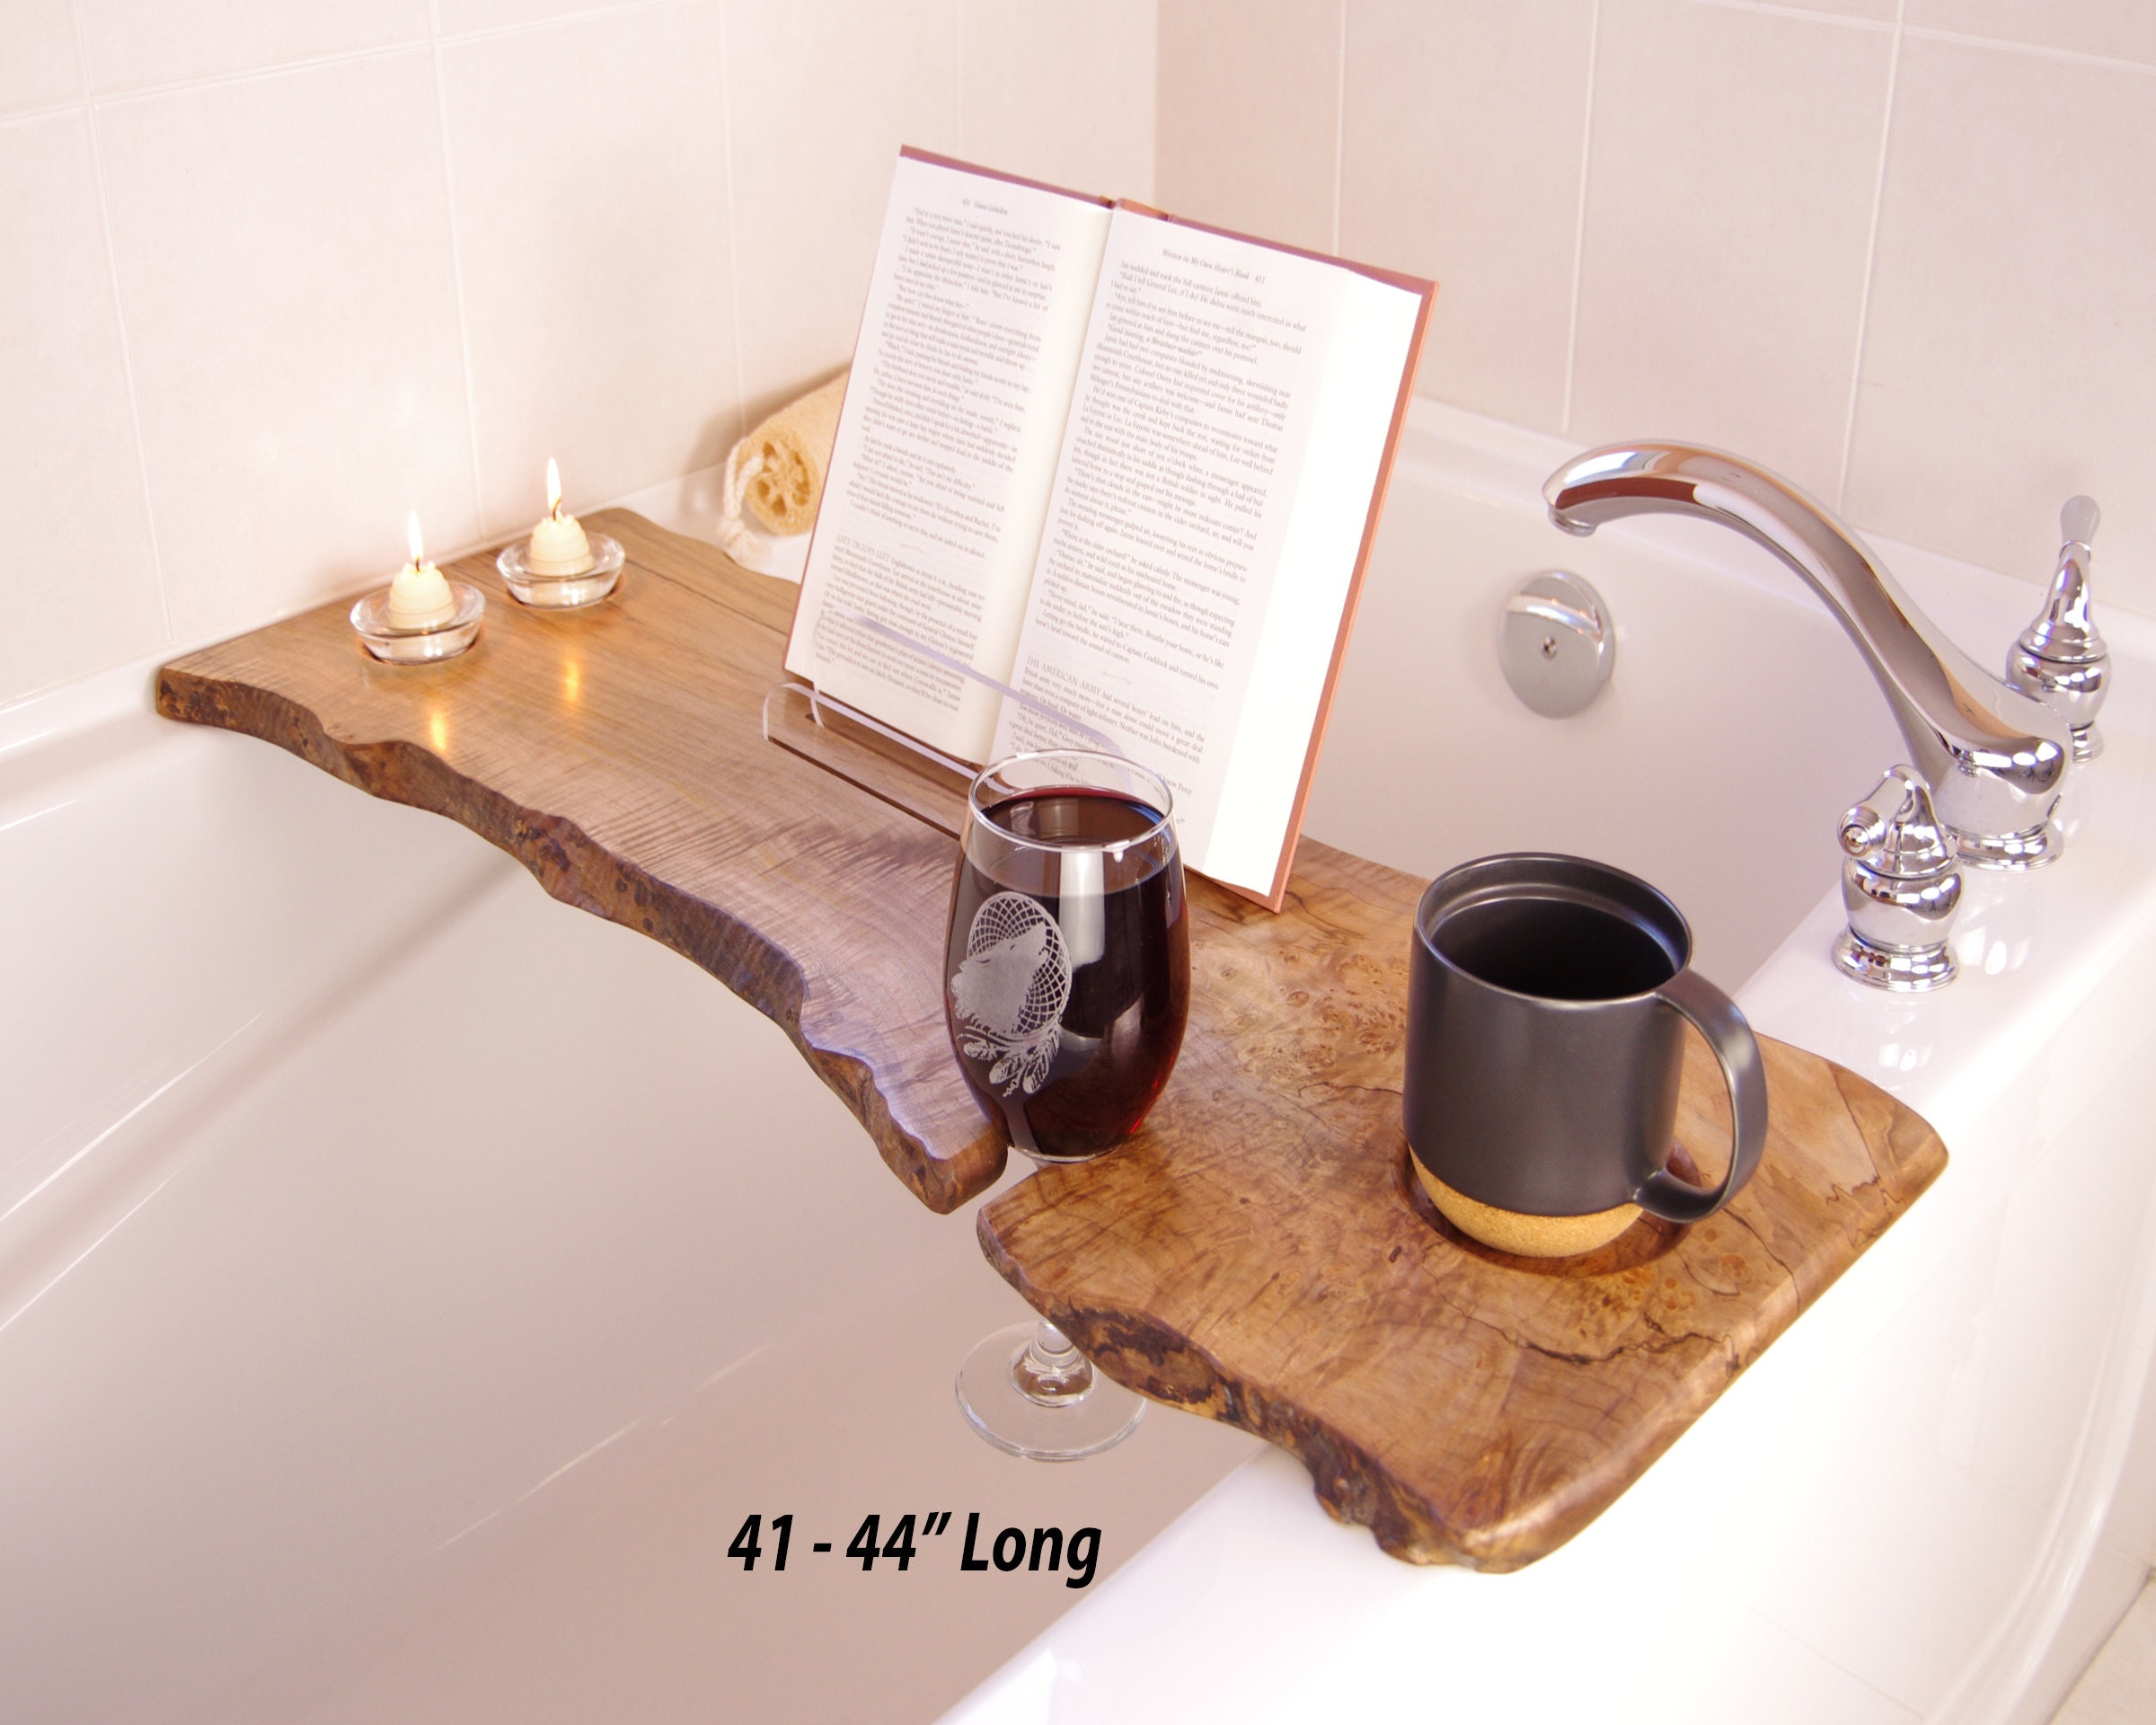 NATURAL WOODEN BATH Caddy / Bath Shelf / Bath Accessories / Live Edge Bath  Table / Bath Tray / Bathroom Decor / Bathtub Caddy / Gift for Her 